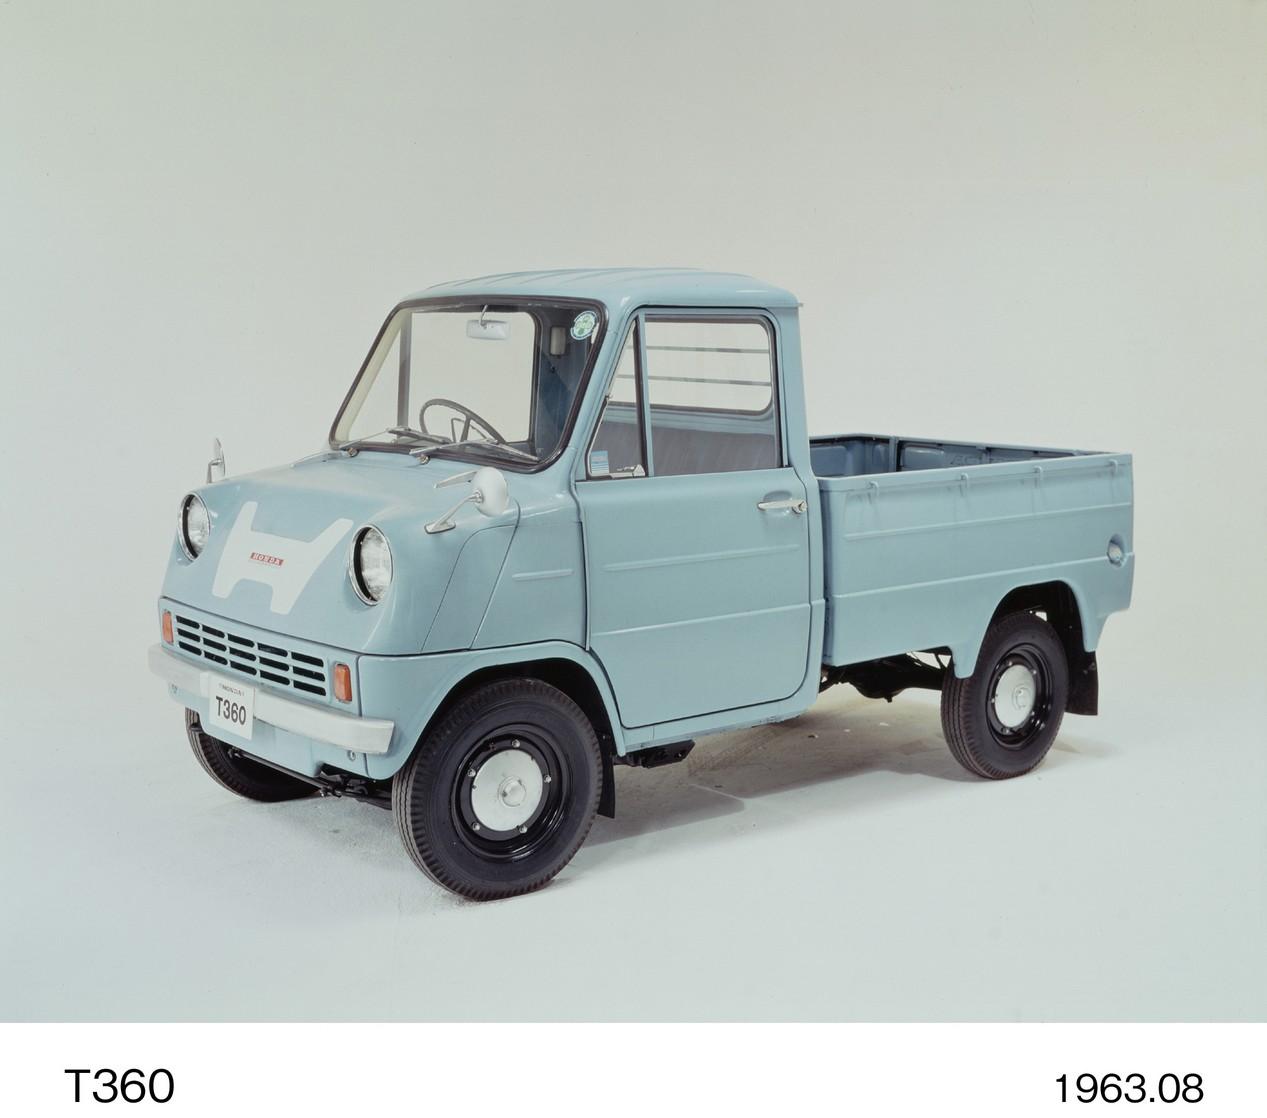 Honda camionnette T360 de 1963 couleur bleue